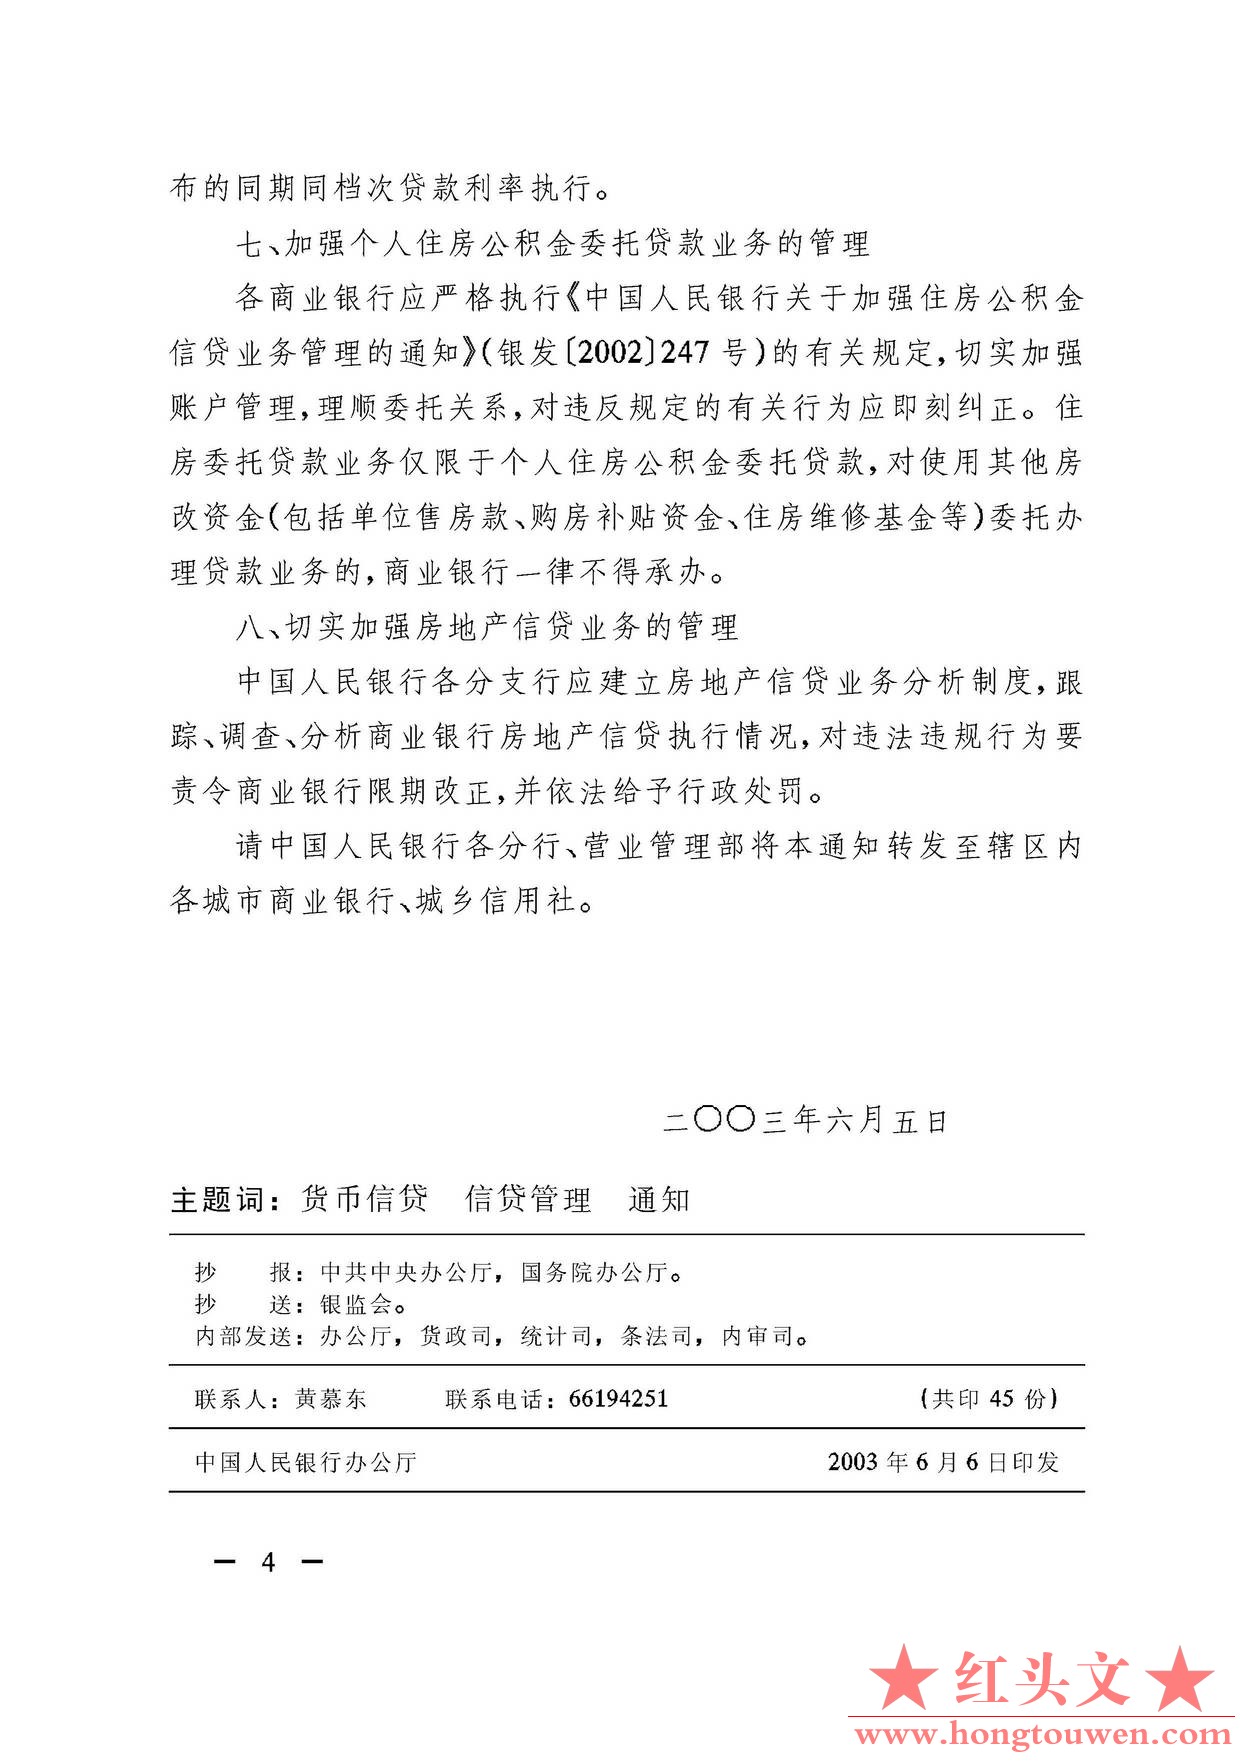 银发[2003]121号-中国人民银行关于进一步加强房地产信贷业务管理的通知_页面_4.jpg.jpg